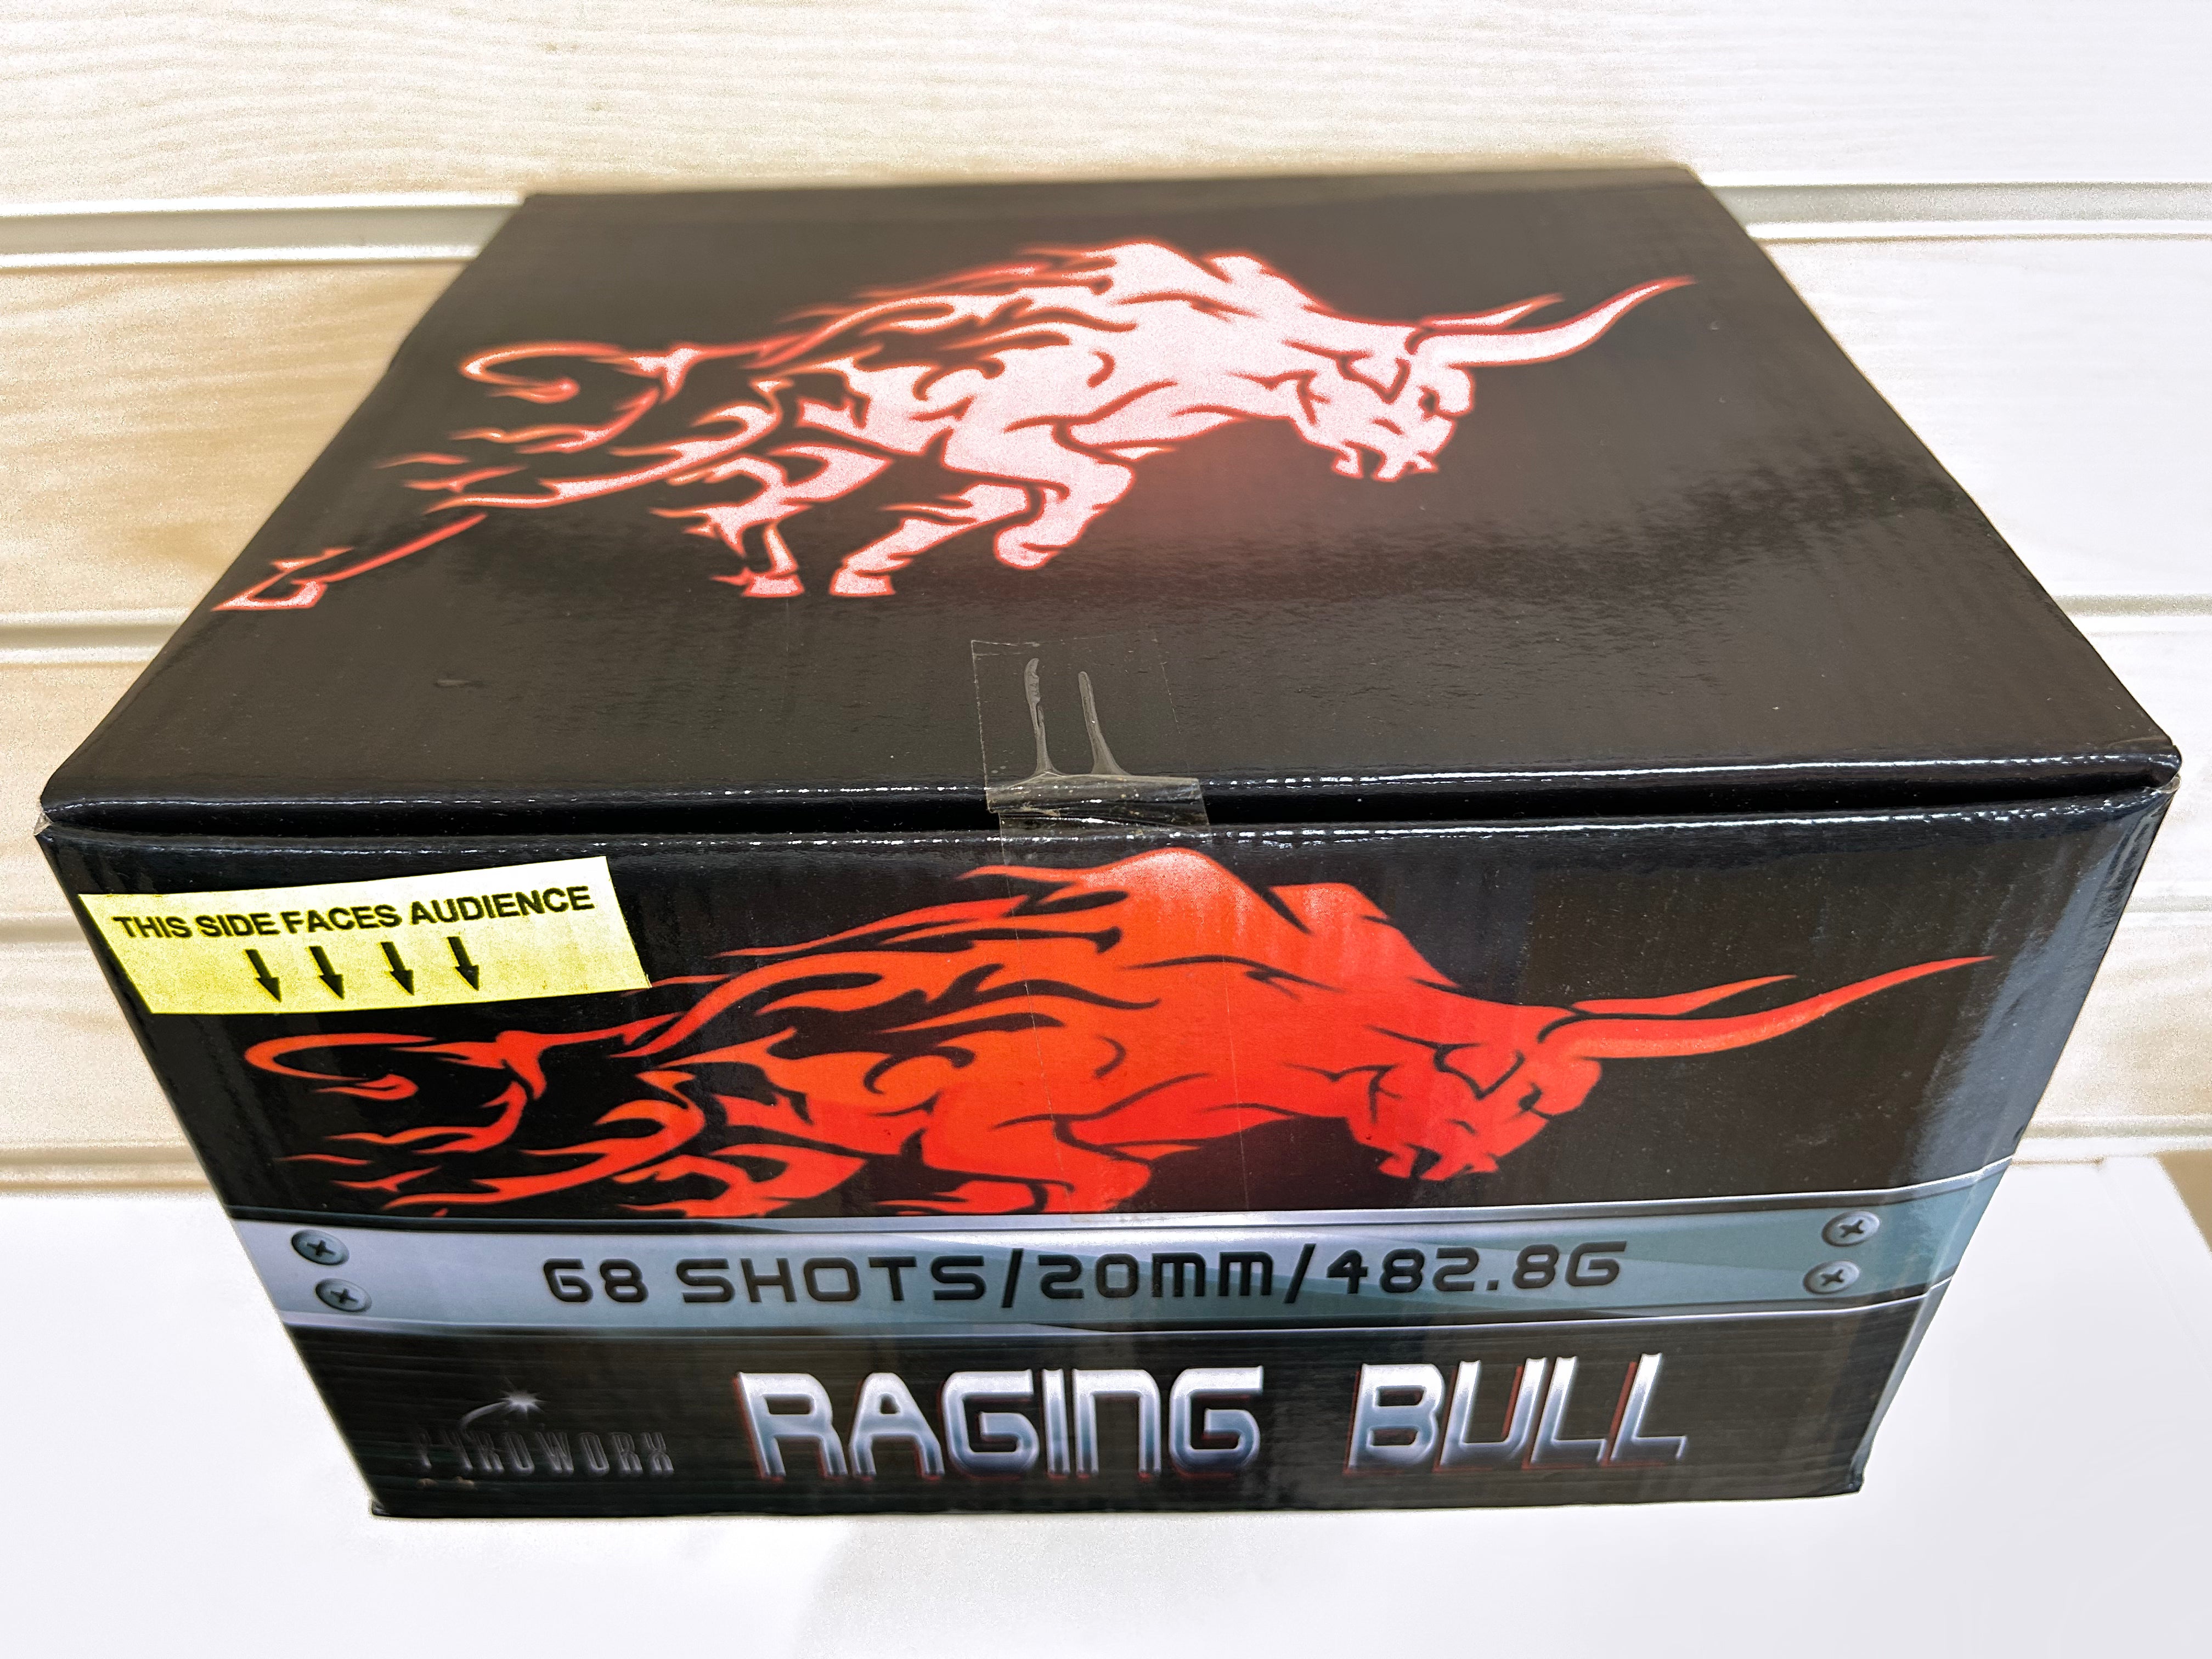 Raging Bull  , 68 shots